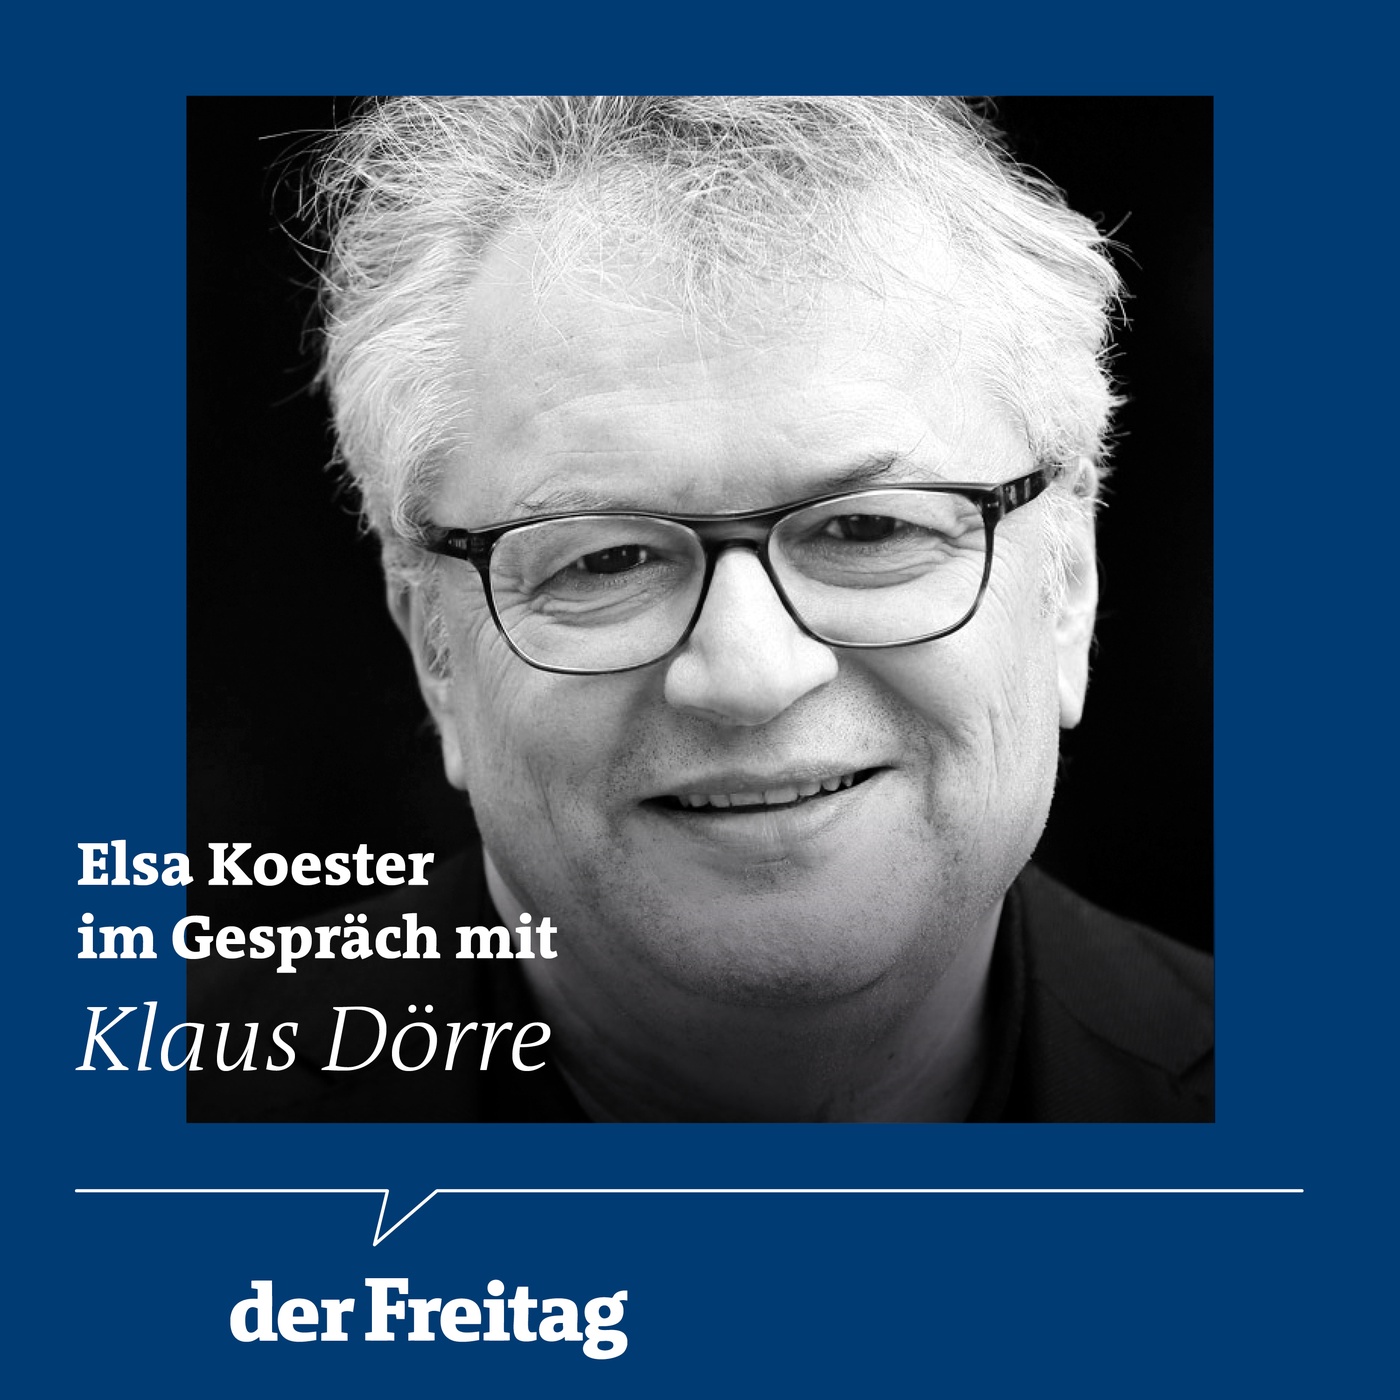 Vier Ideen, wie wir die AfD besiegen können – Klaus Dörre im Gespräch mit Elsa Koester